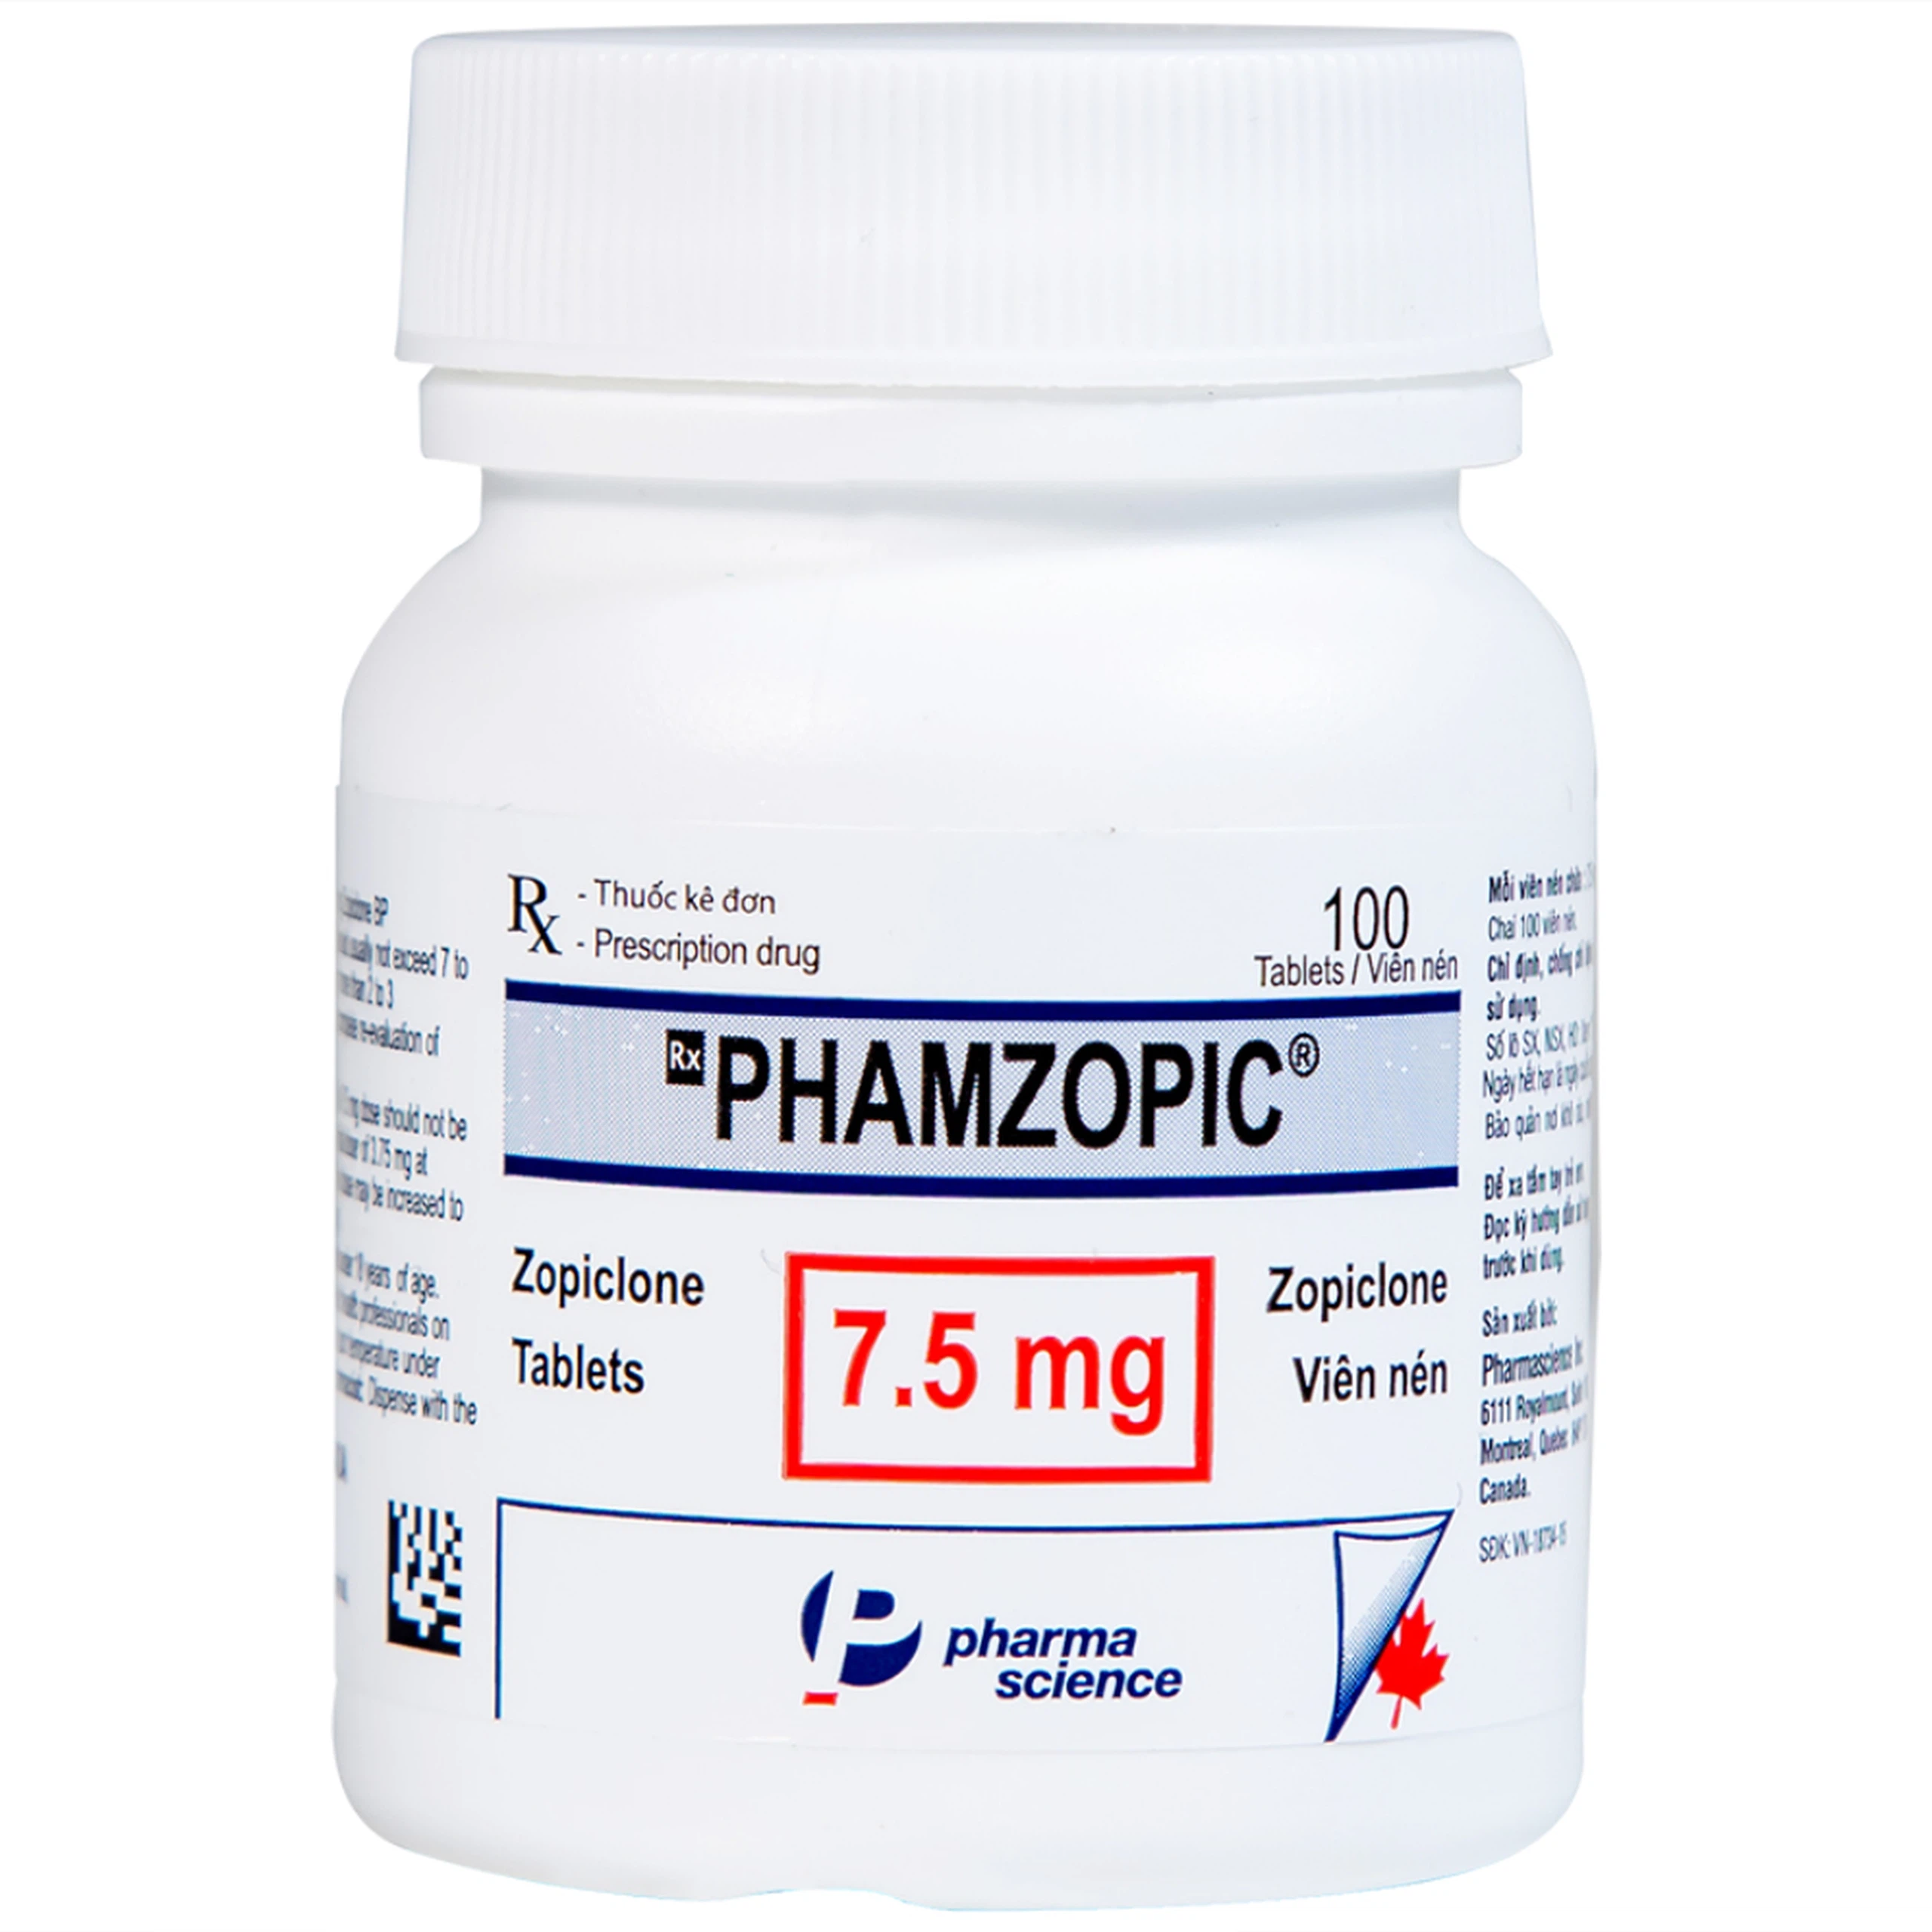 Viên nén Phamzopic 7.5mg Pharmascience điều trị rối loạn giấc ngủ (100 viên)